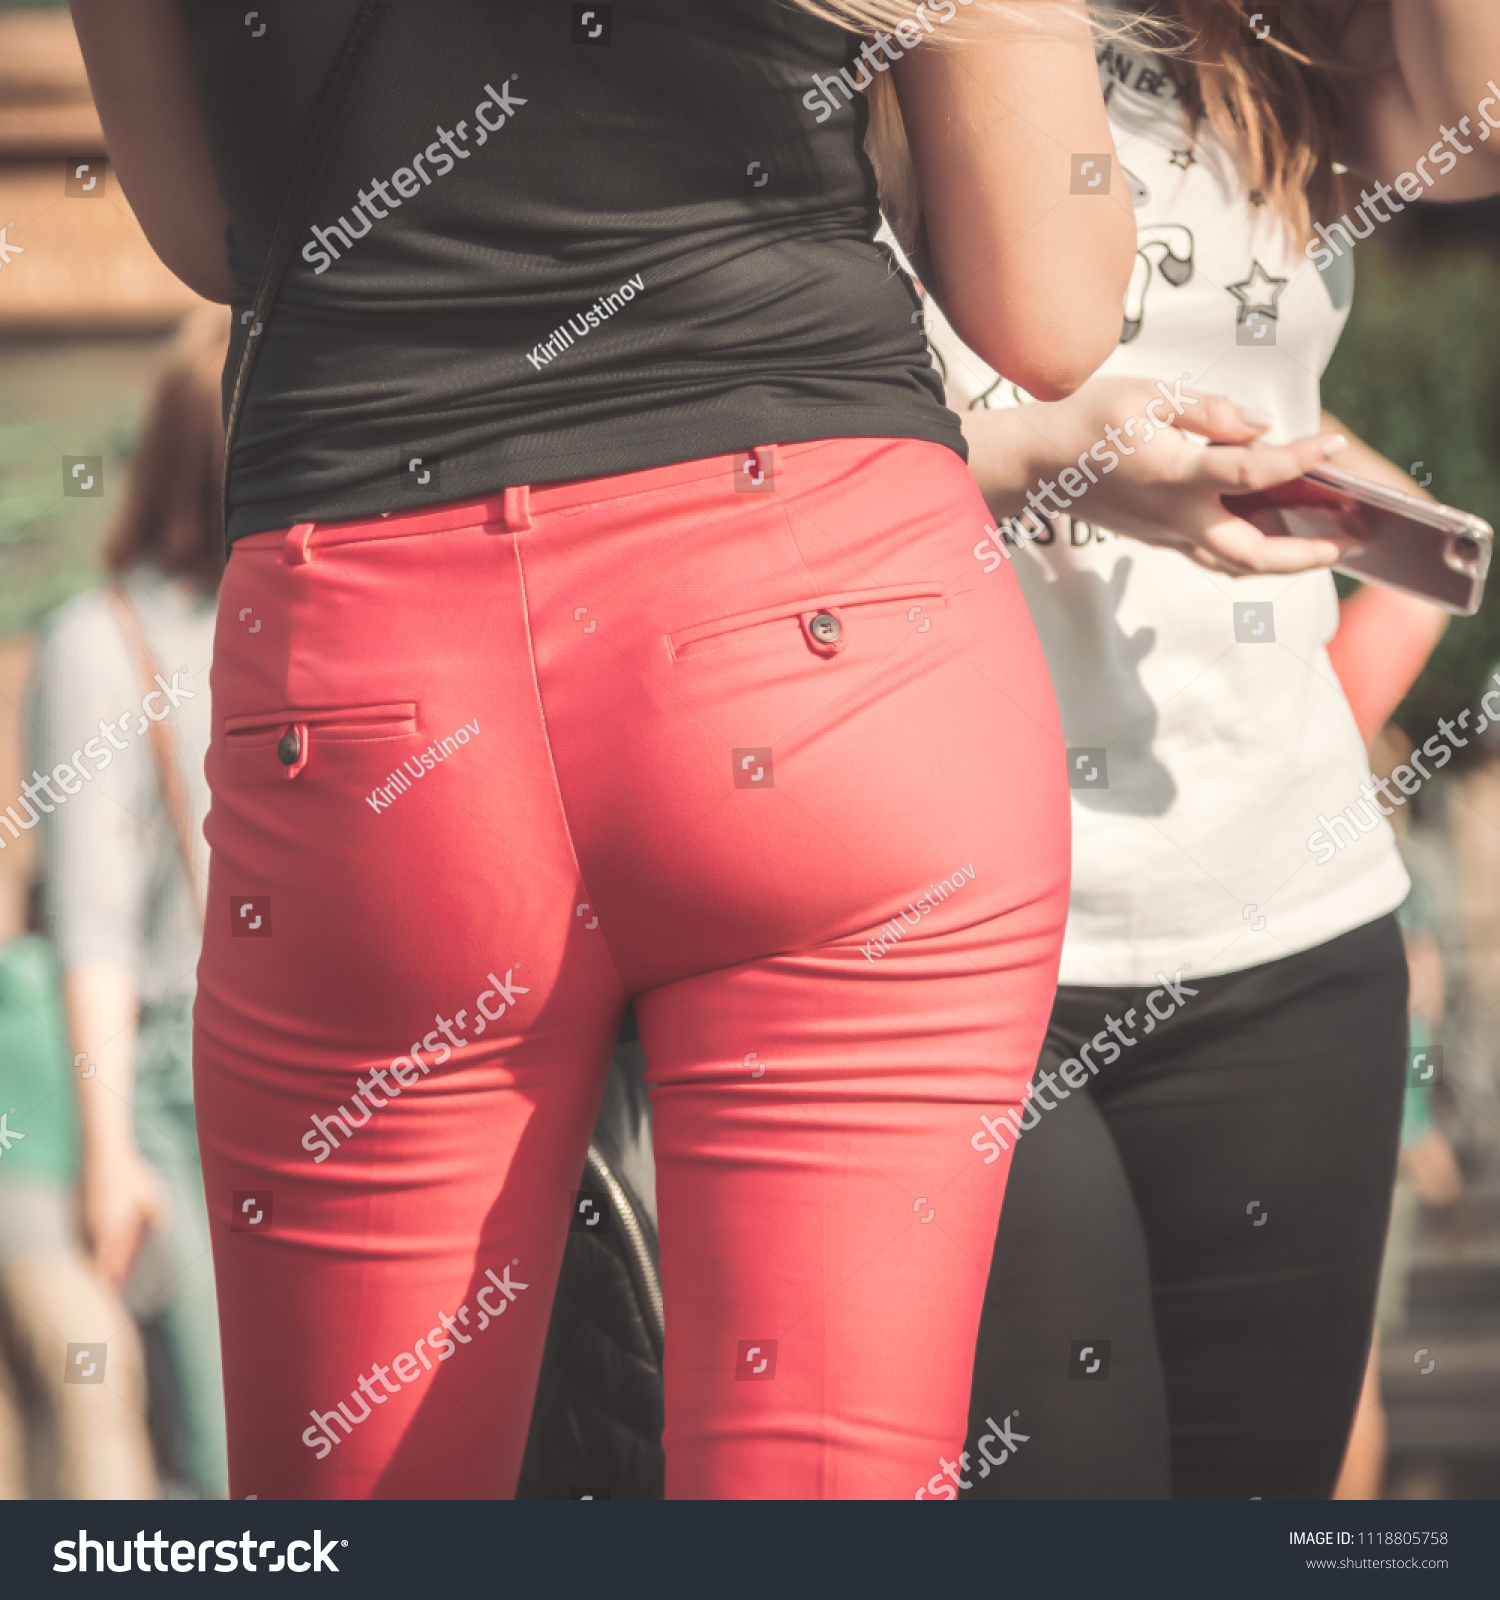 Pics Of Women Ass